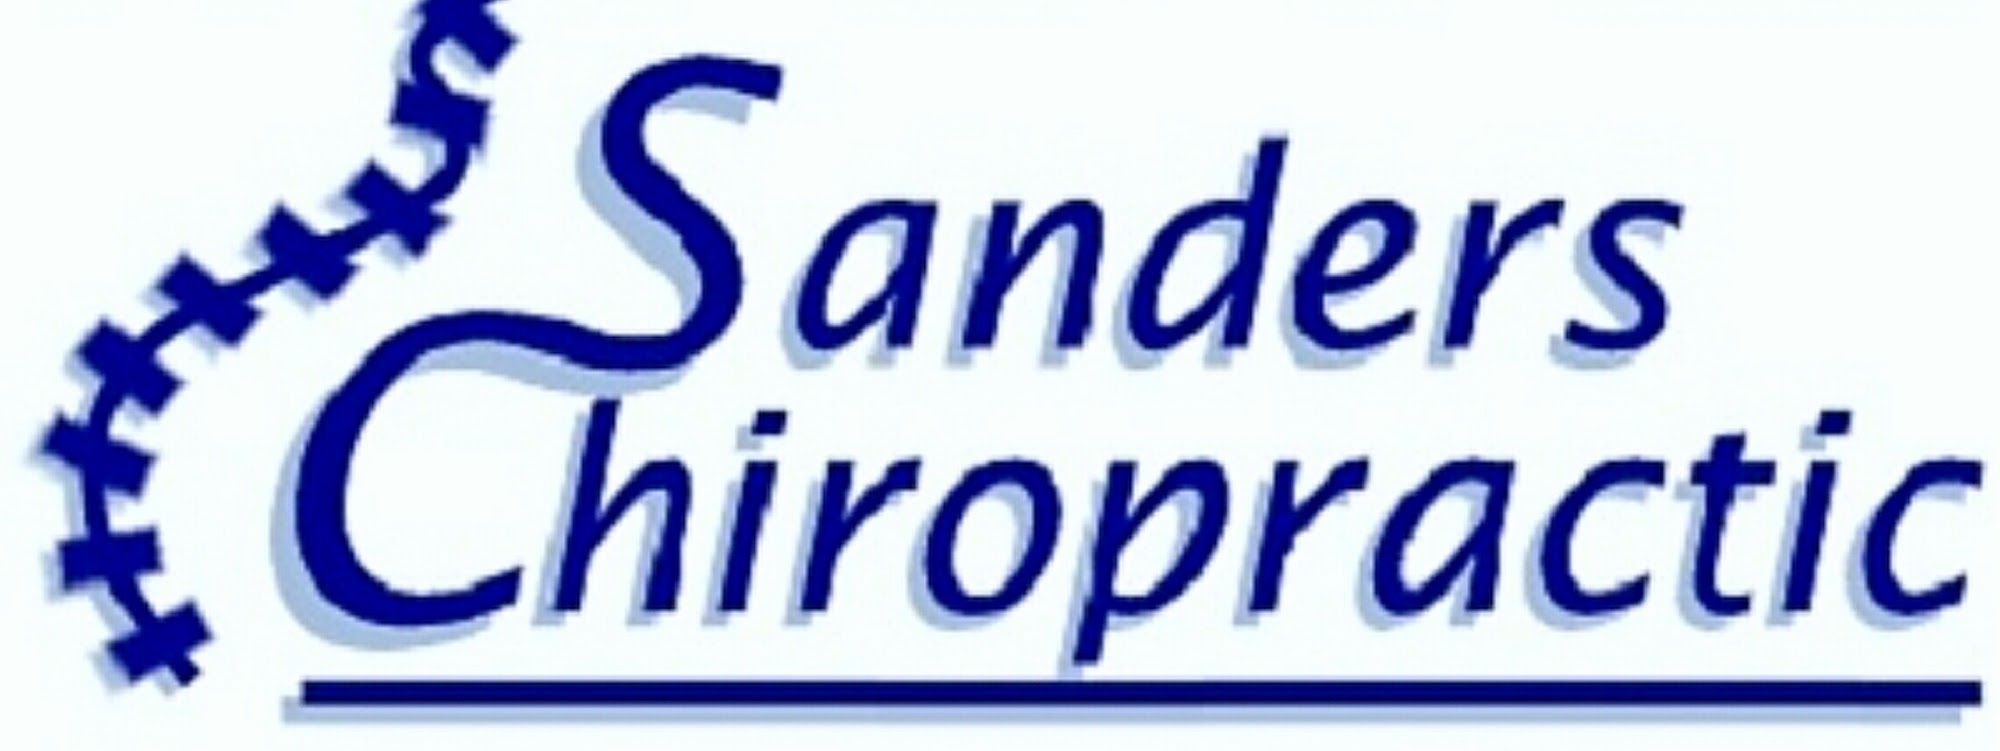 Sanders Chiropractic